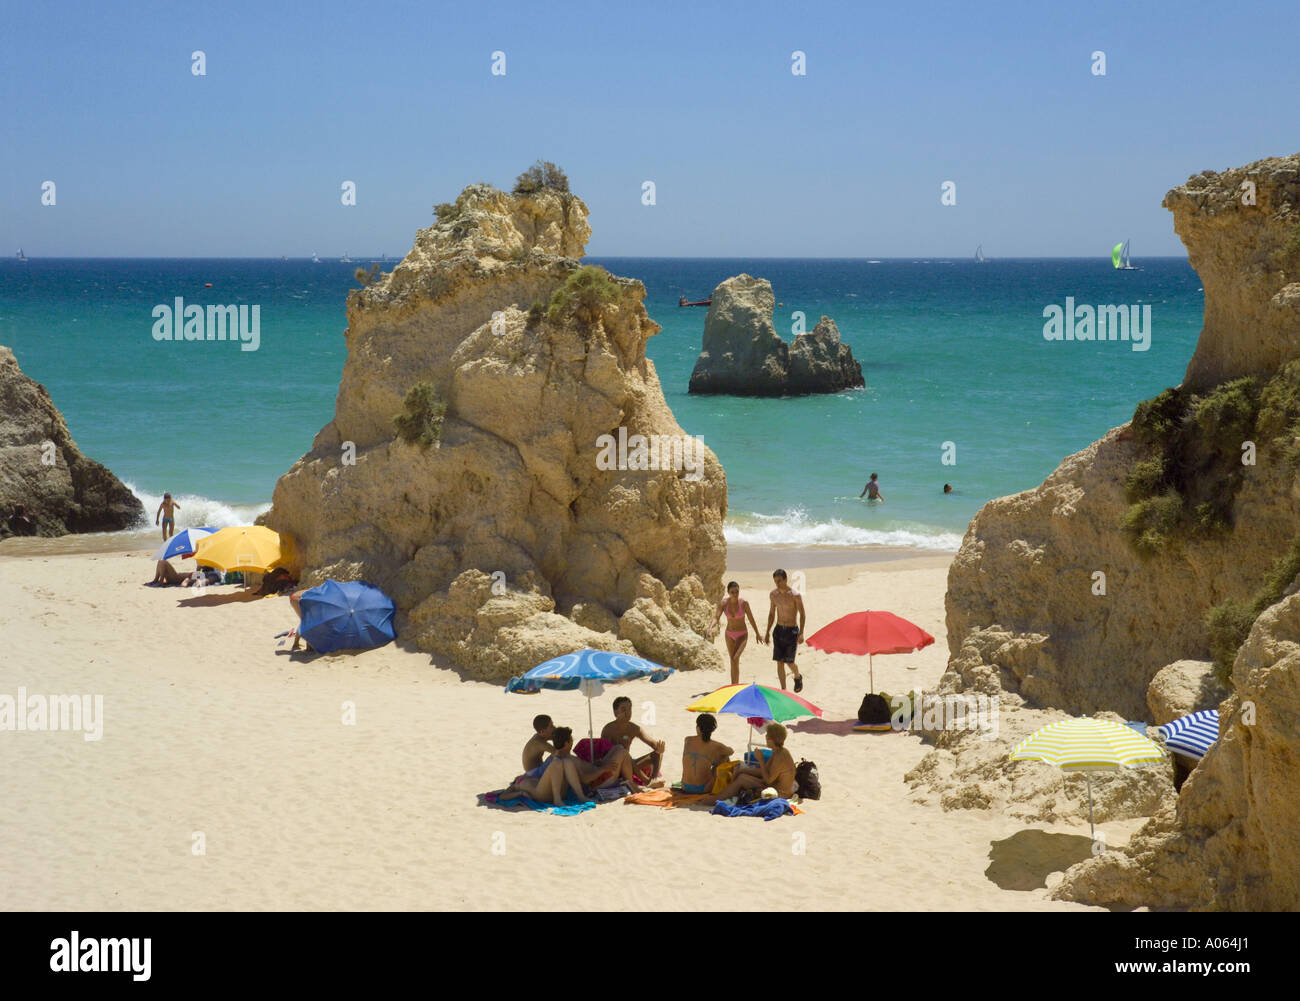 Portugal, Algarve, Felsen am Strand von Alvor im Sommer Stockfoto